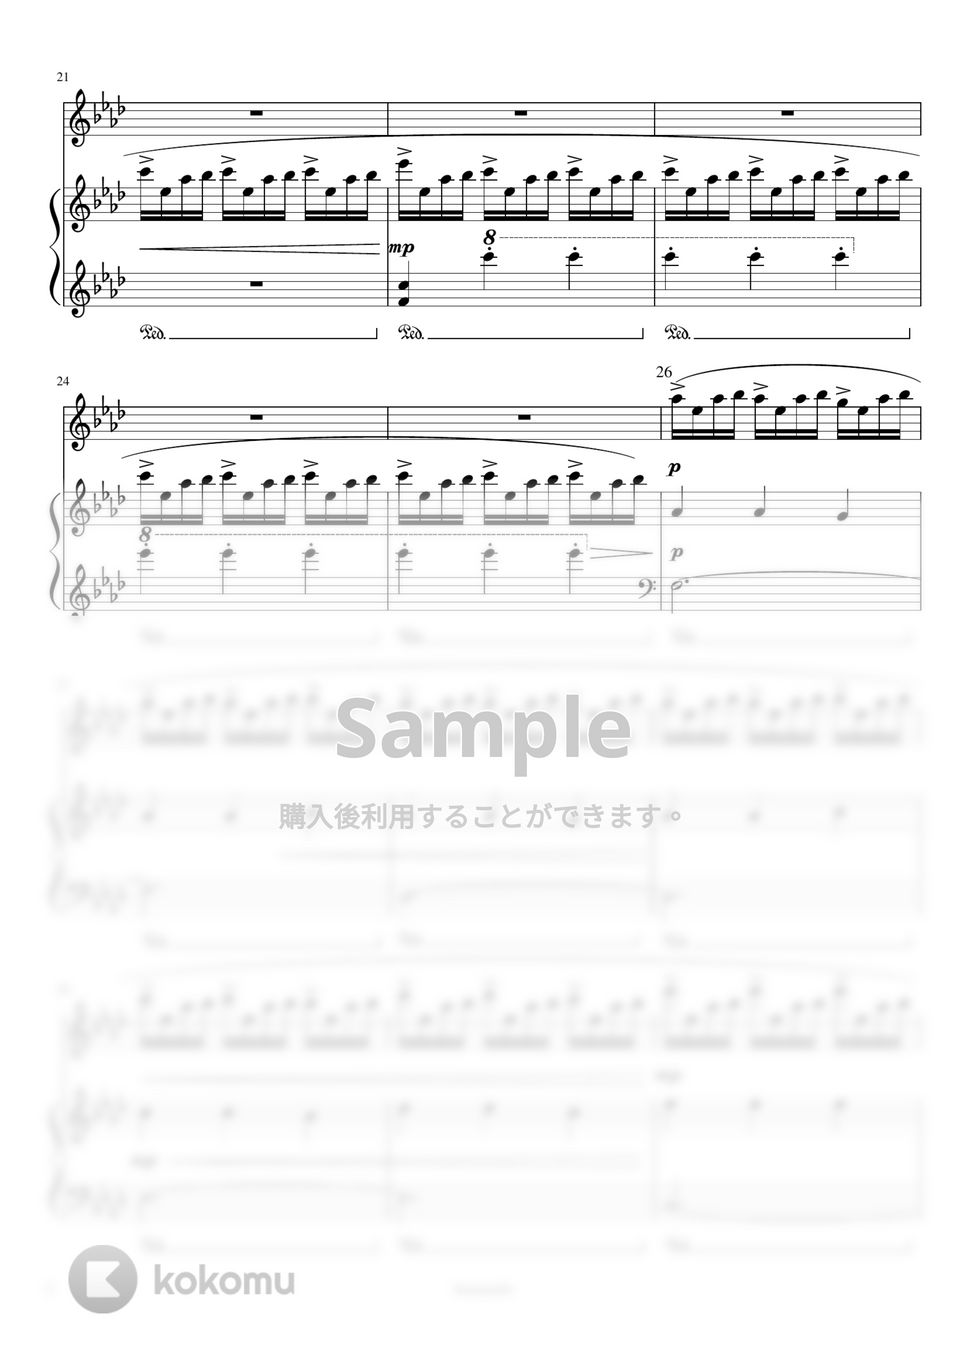 最愛 - Familiar Arms (ピアノ連弾) by harmony piano